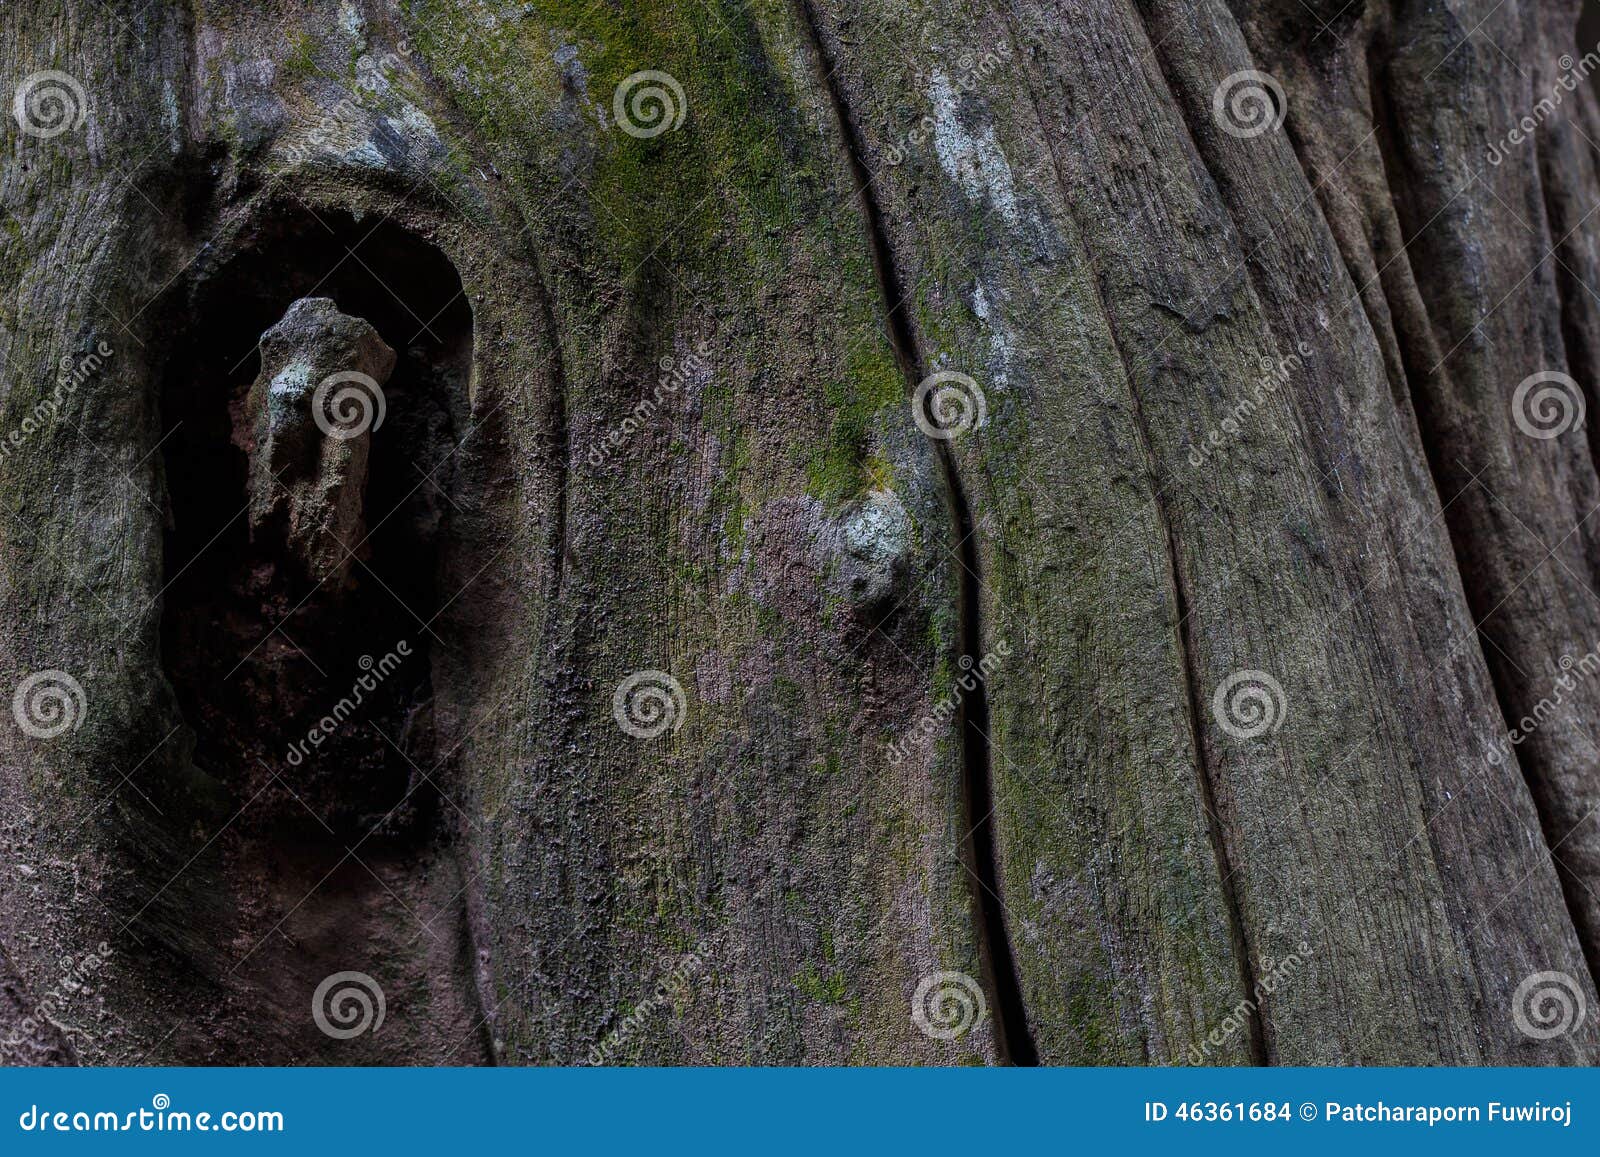 Tree Bark Texture Wood Texture/wood Texture Background Stock Photo ...